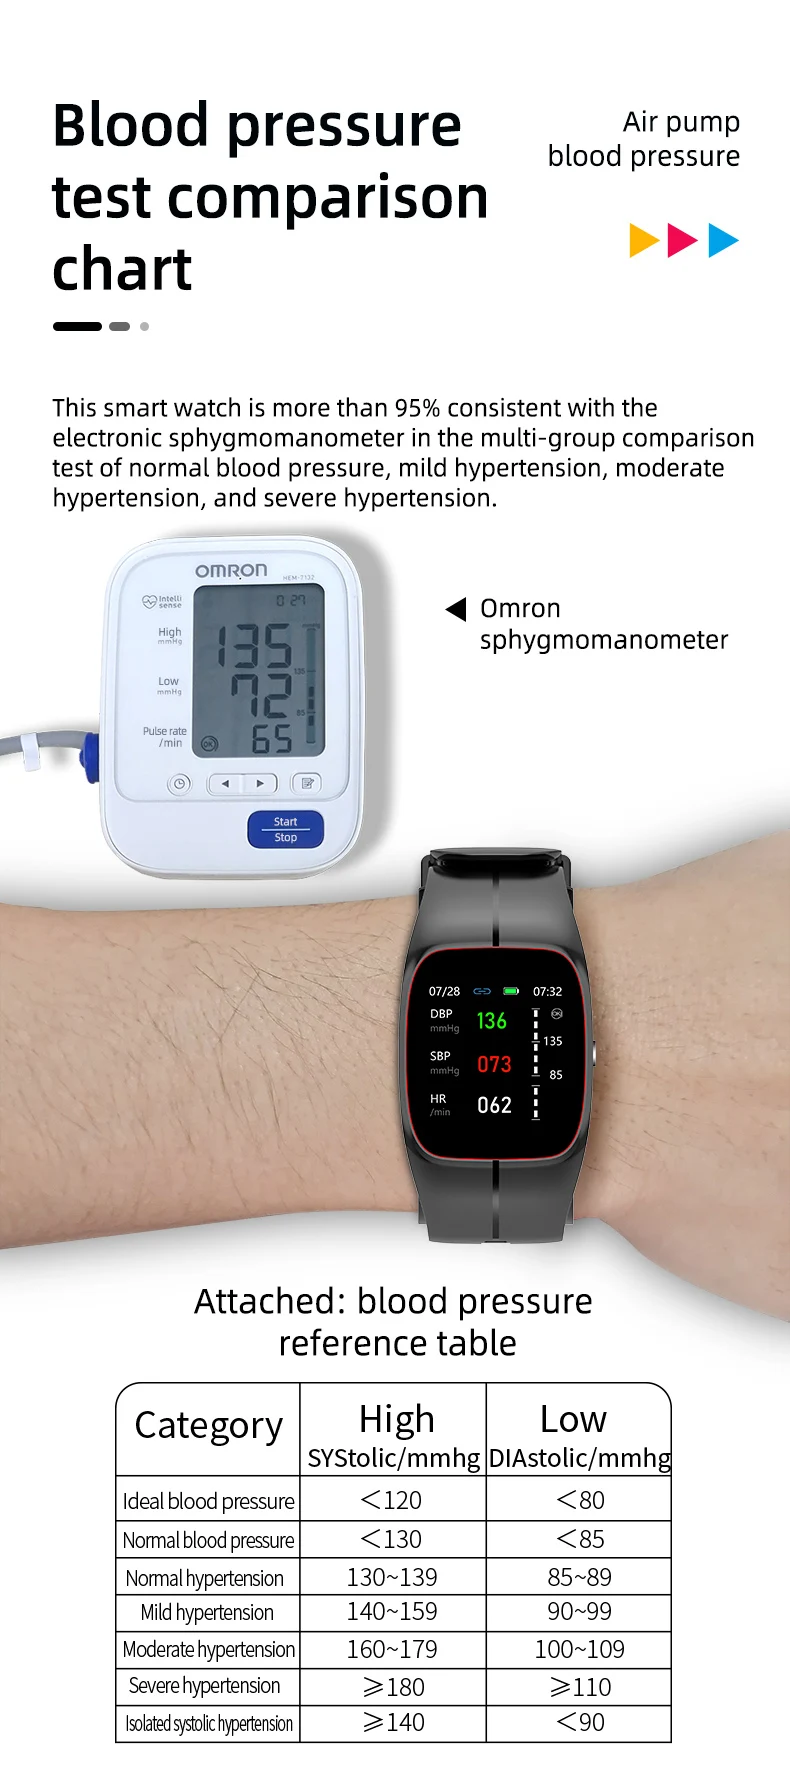 P20 Smart Watch Air Pump Blood Pressure (5).jpg